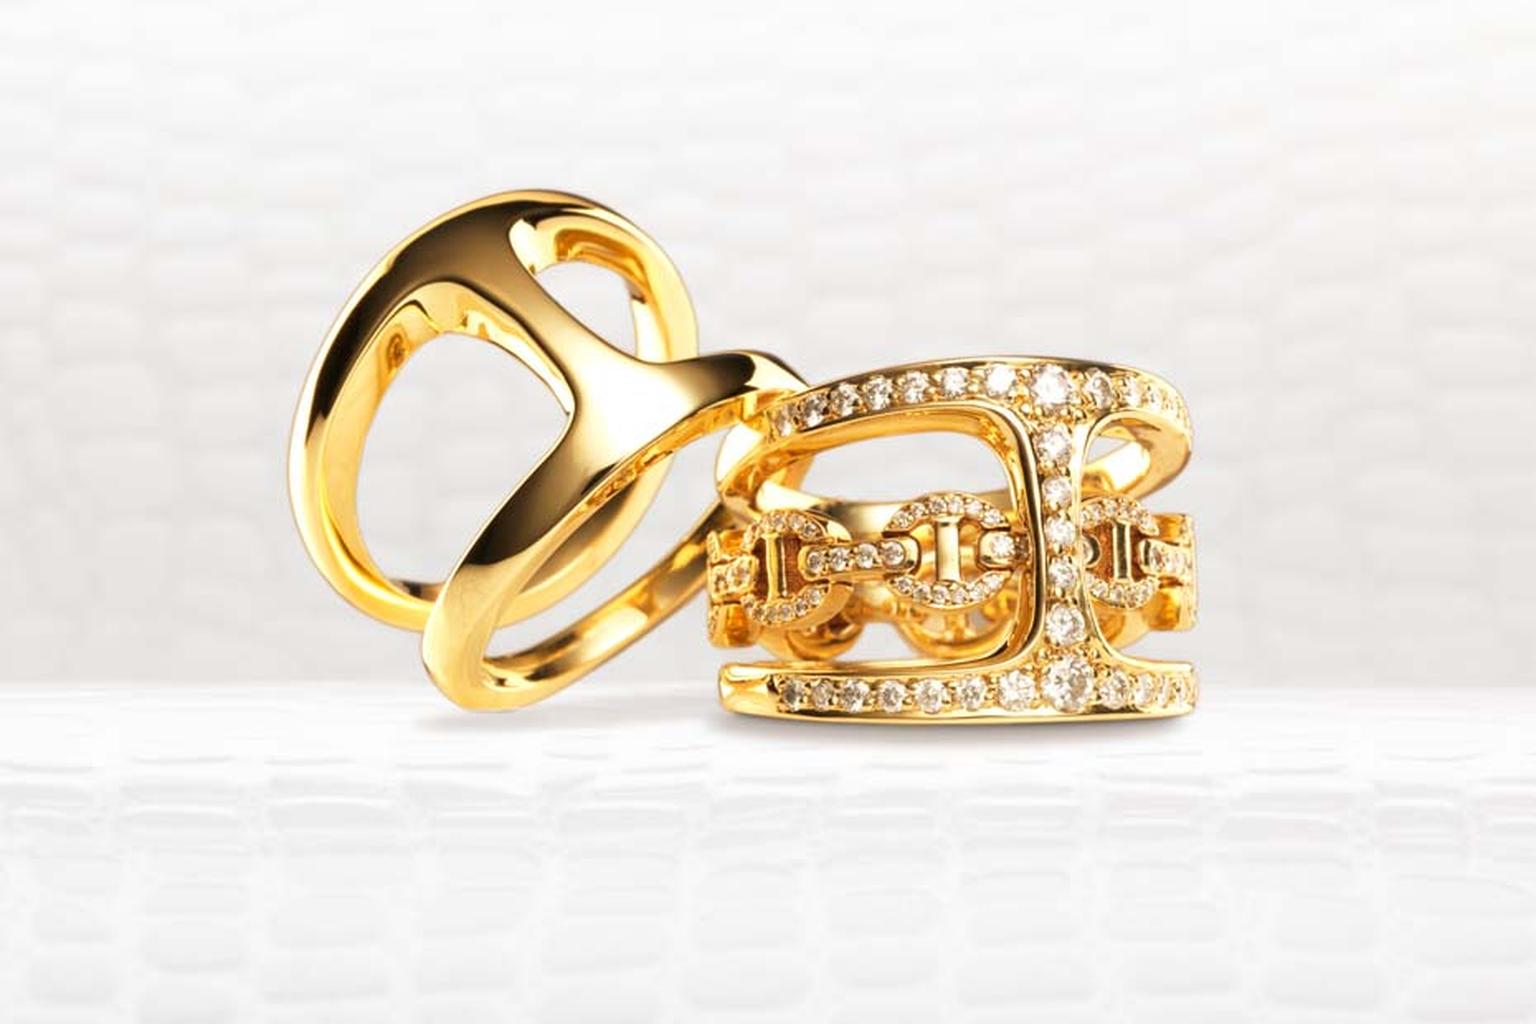 Hoorsenbuhs Dame Phantom Clique ring in yellow gold alongside the Gold Phantom Clique ring with diamonds.